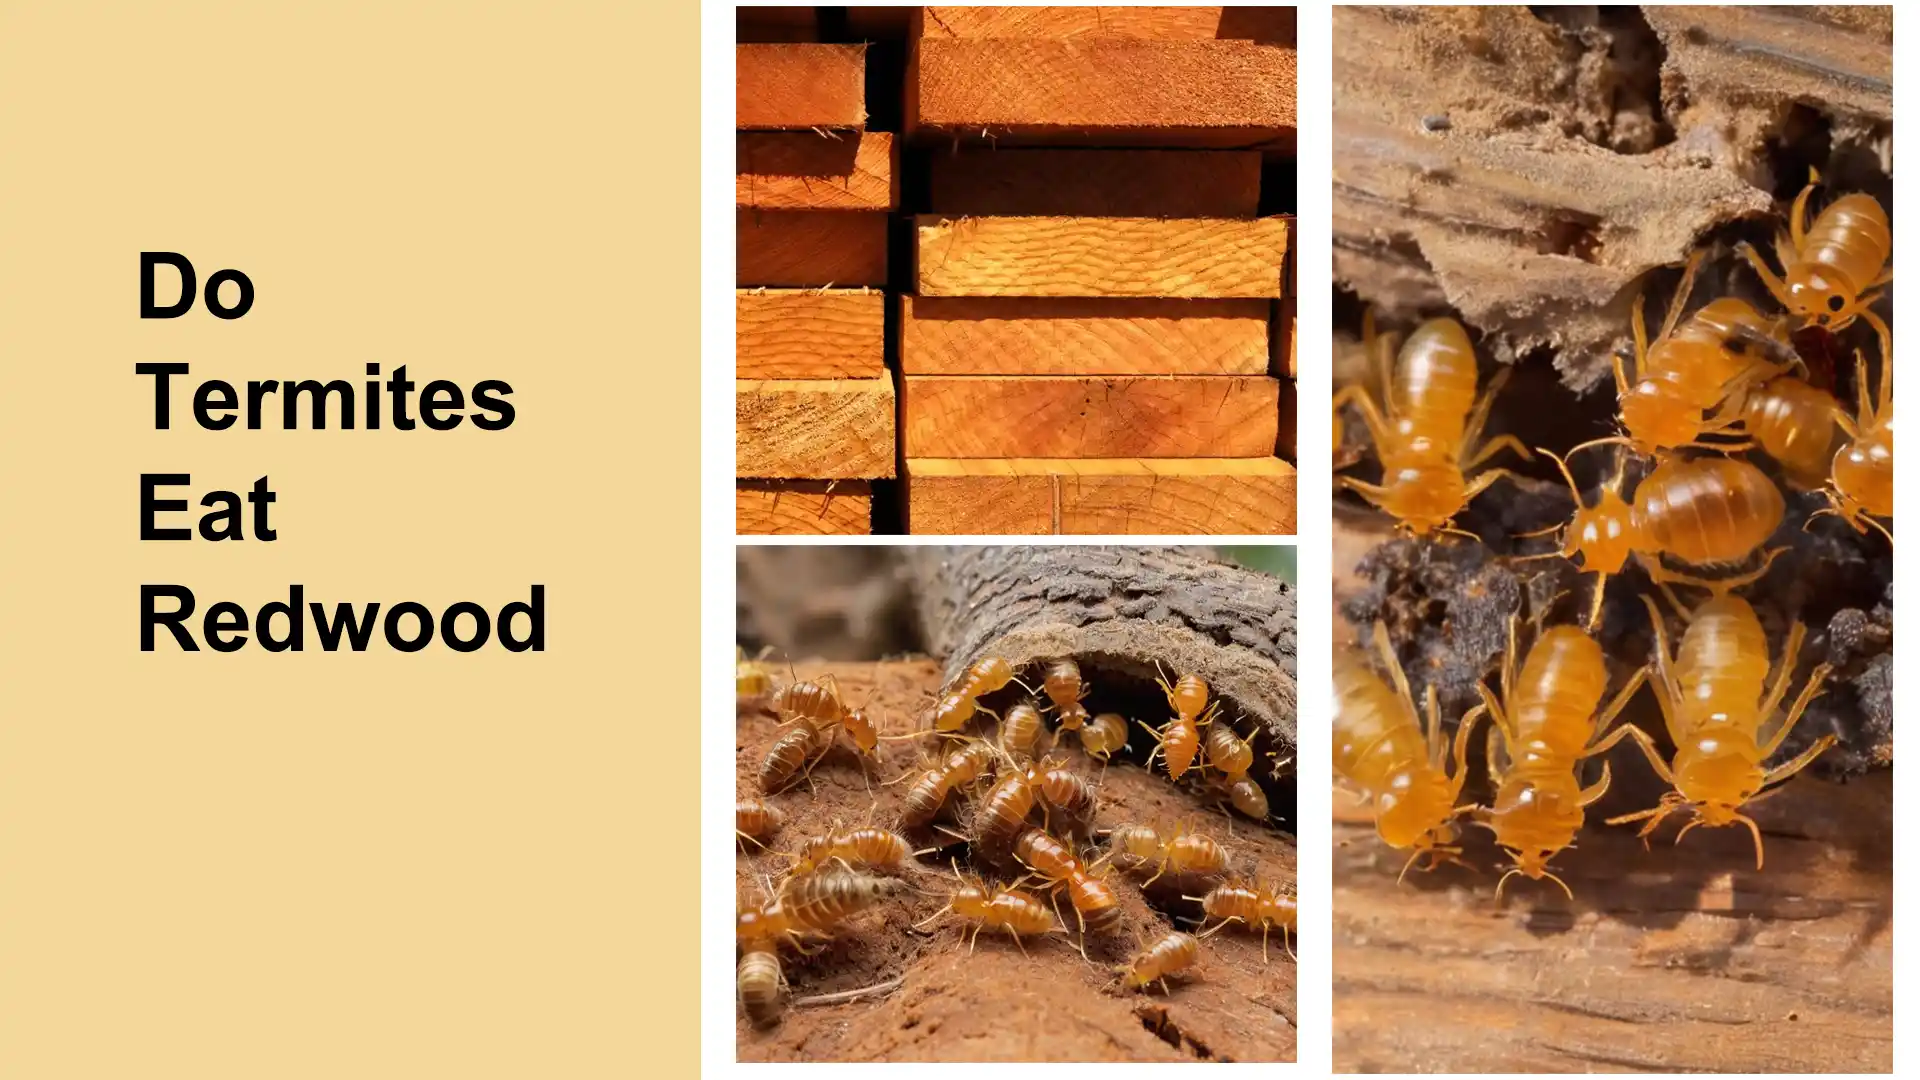 Do Termites Eat Redwood